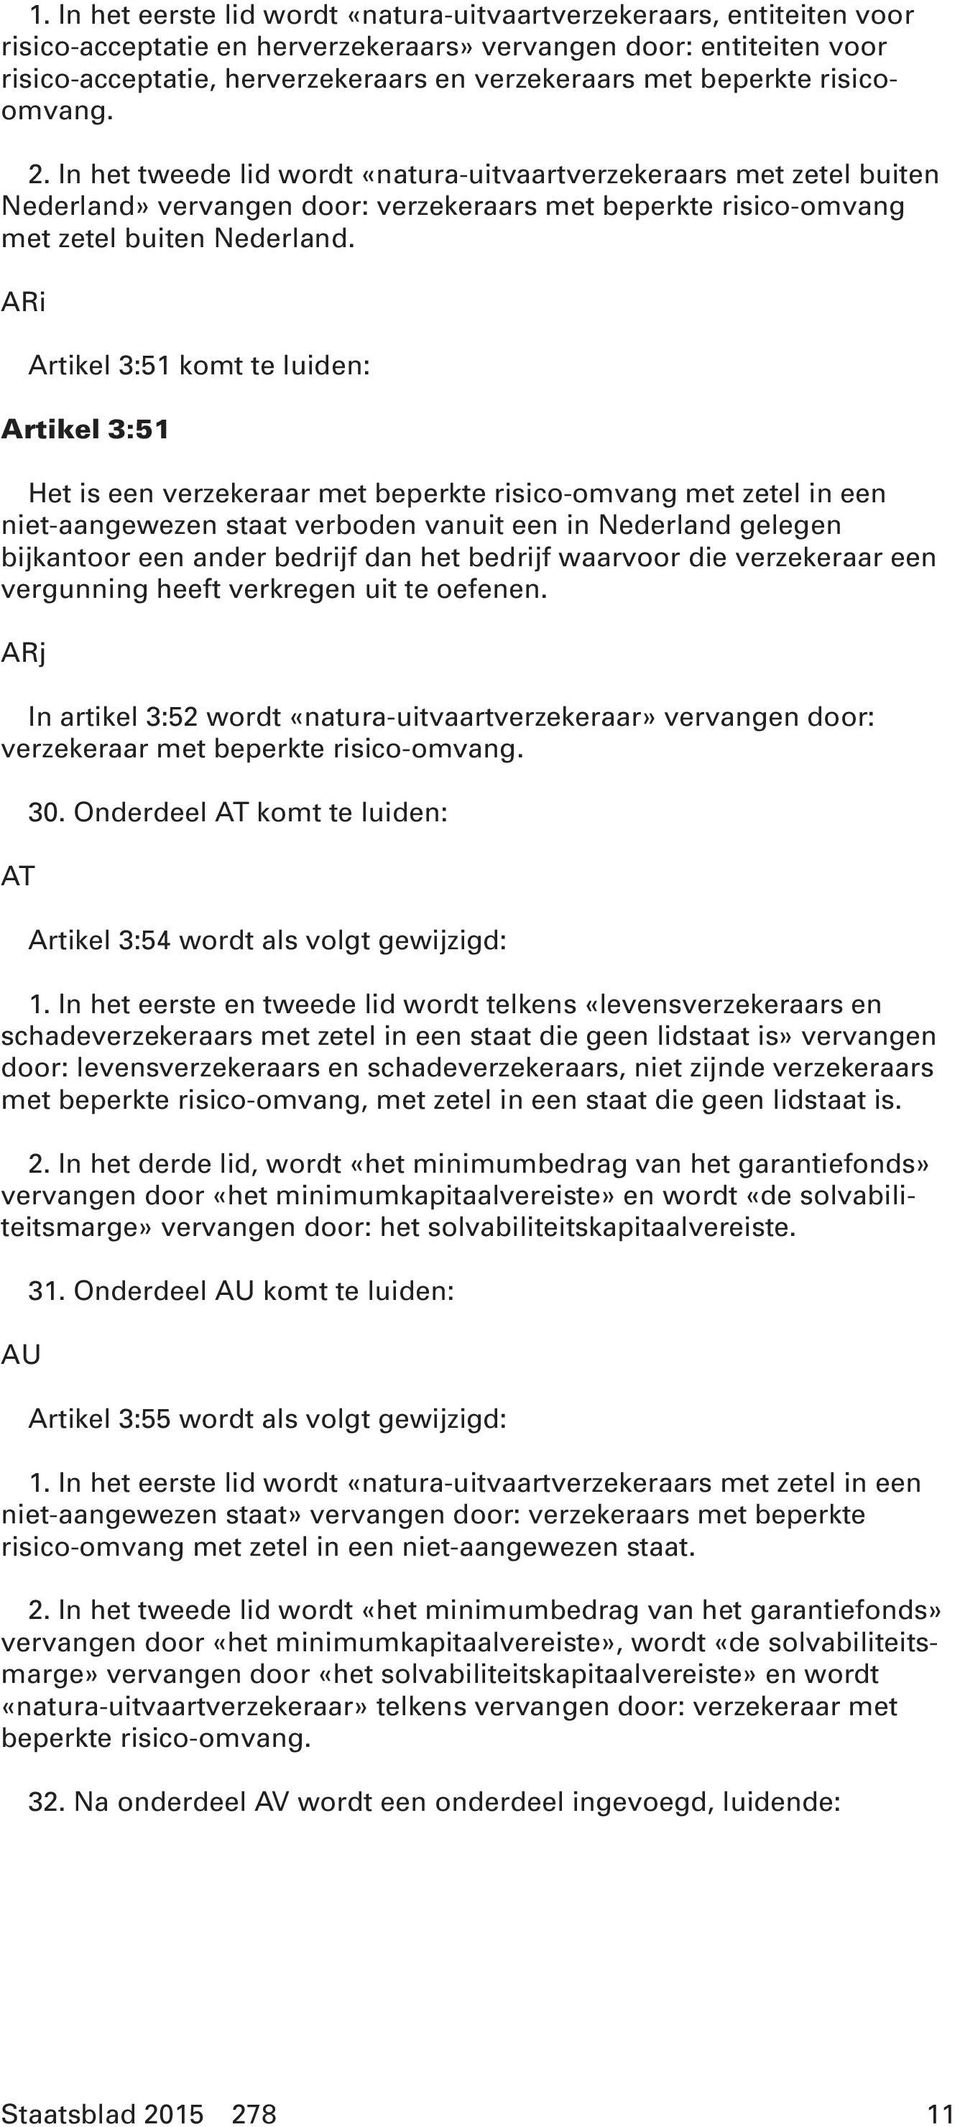 ARi Artikel 3:51 komt te luiden: Artikel 3:51 Het is een verzekeraar met beperkte risico-omvang met zetel in een niet-aangewezen staat verboden vanuit een in Nederland gelegen bijkantoor een ander